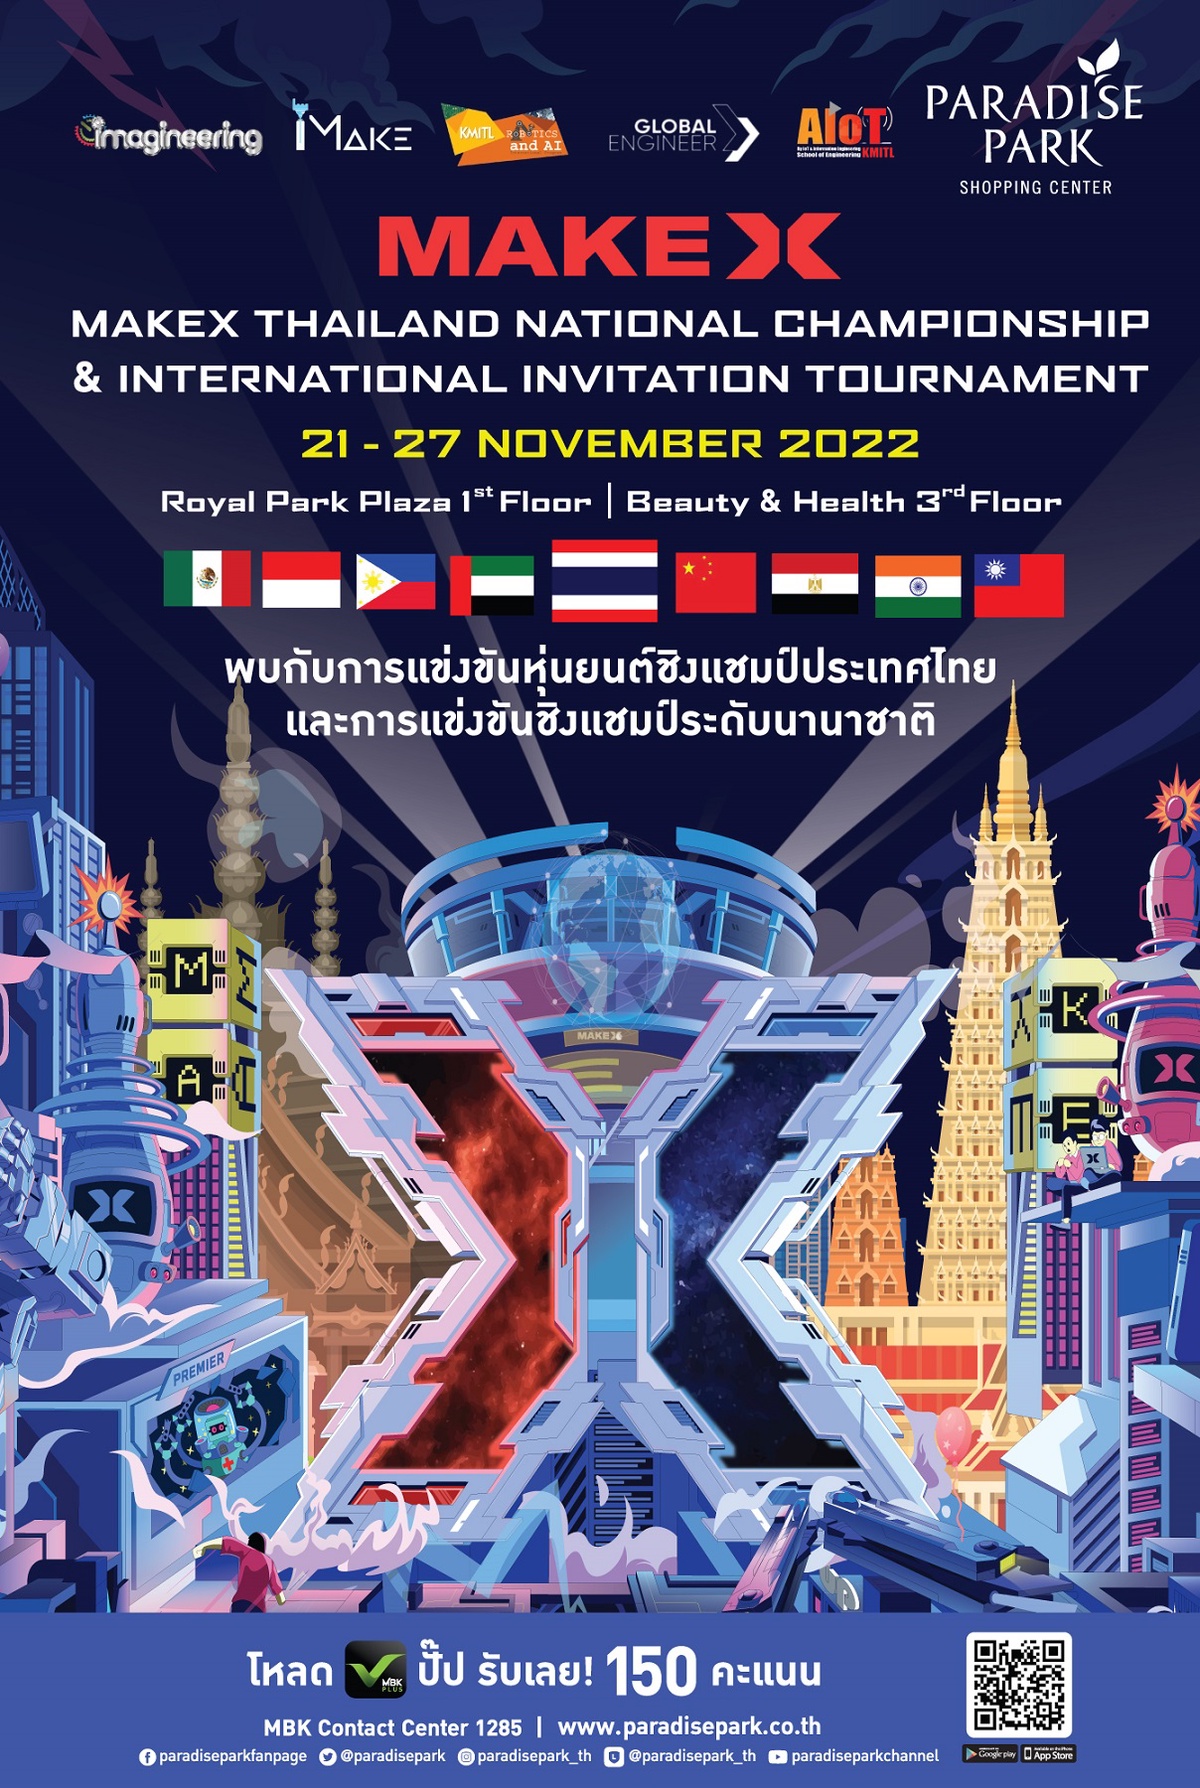 พาราไดซ์ พาร์ค เปิดพื้นที่จัดการแข่งขันหุ่นยนต์ชิงแชมป์ประเทศไทย และระดับนานาชาติ MAKEX THAILAND NATIONAL CHAMPIONSHIP INTERNATIONAL INVITATION TOURNAMENT